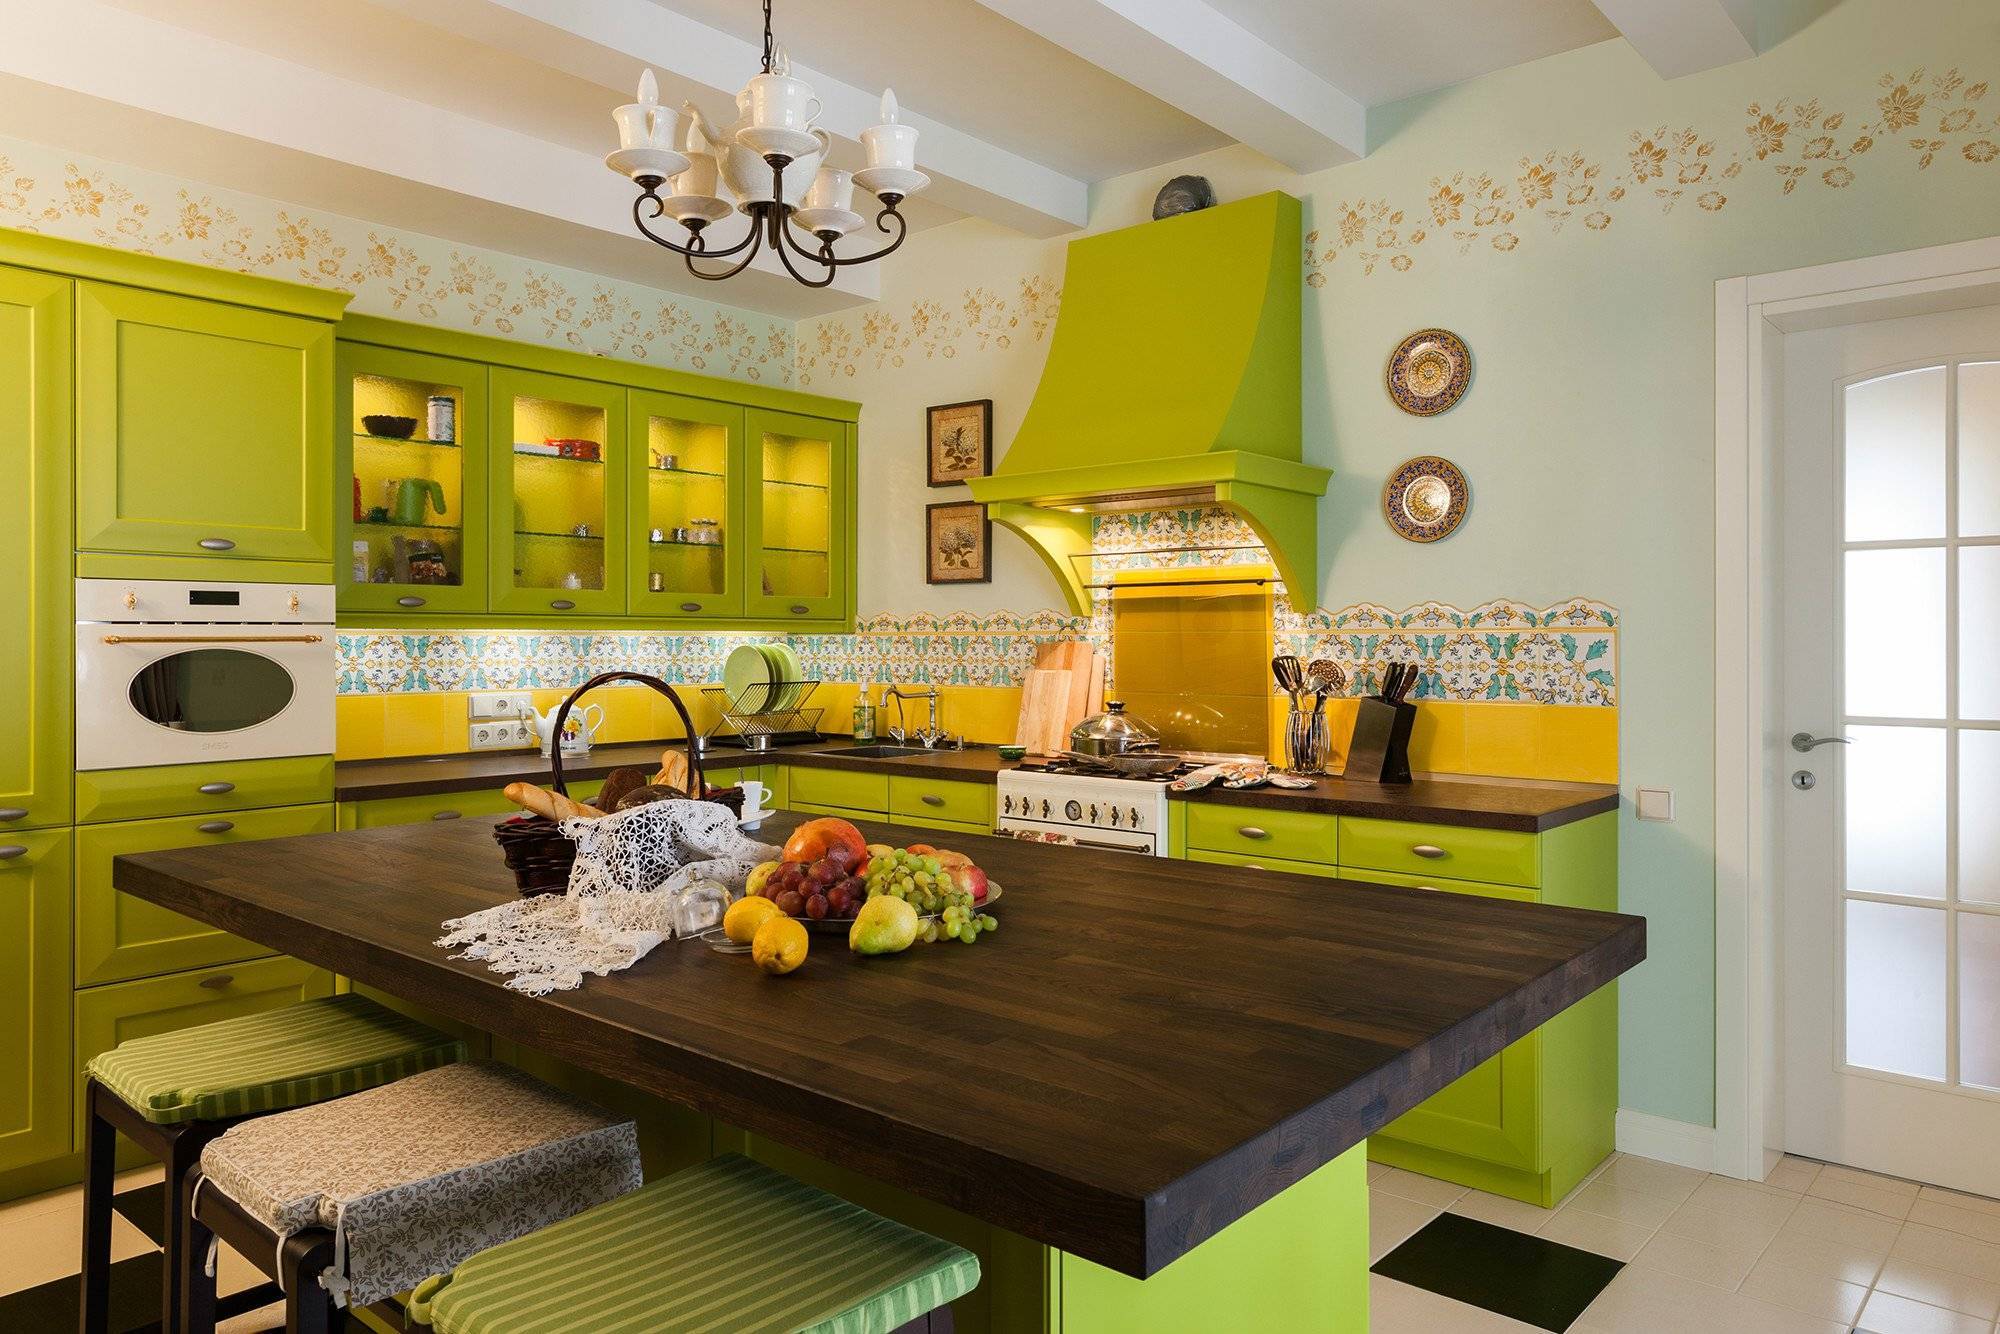 В какой цвет покрасить стены на кухне: выбор цветовой гаммы по разным критериям | в мире краски